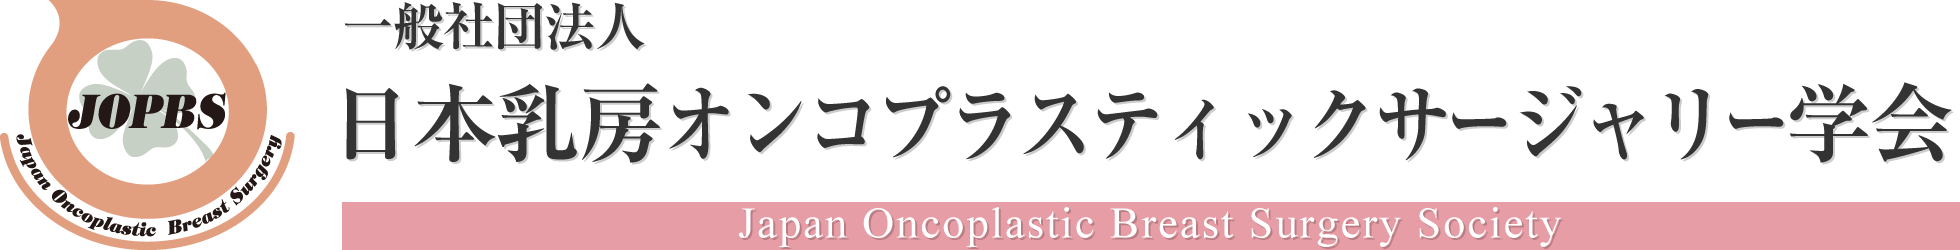 一般社団法人日本乳房オンコプラスティックサージャリー学会